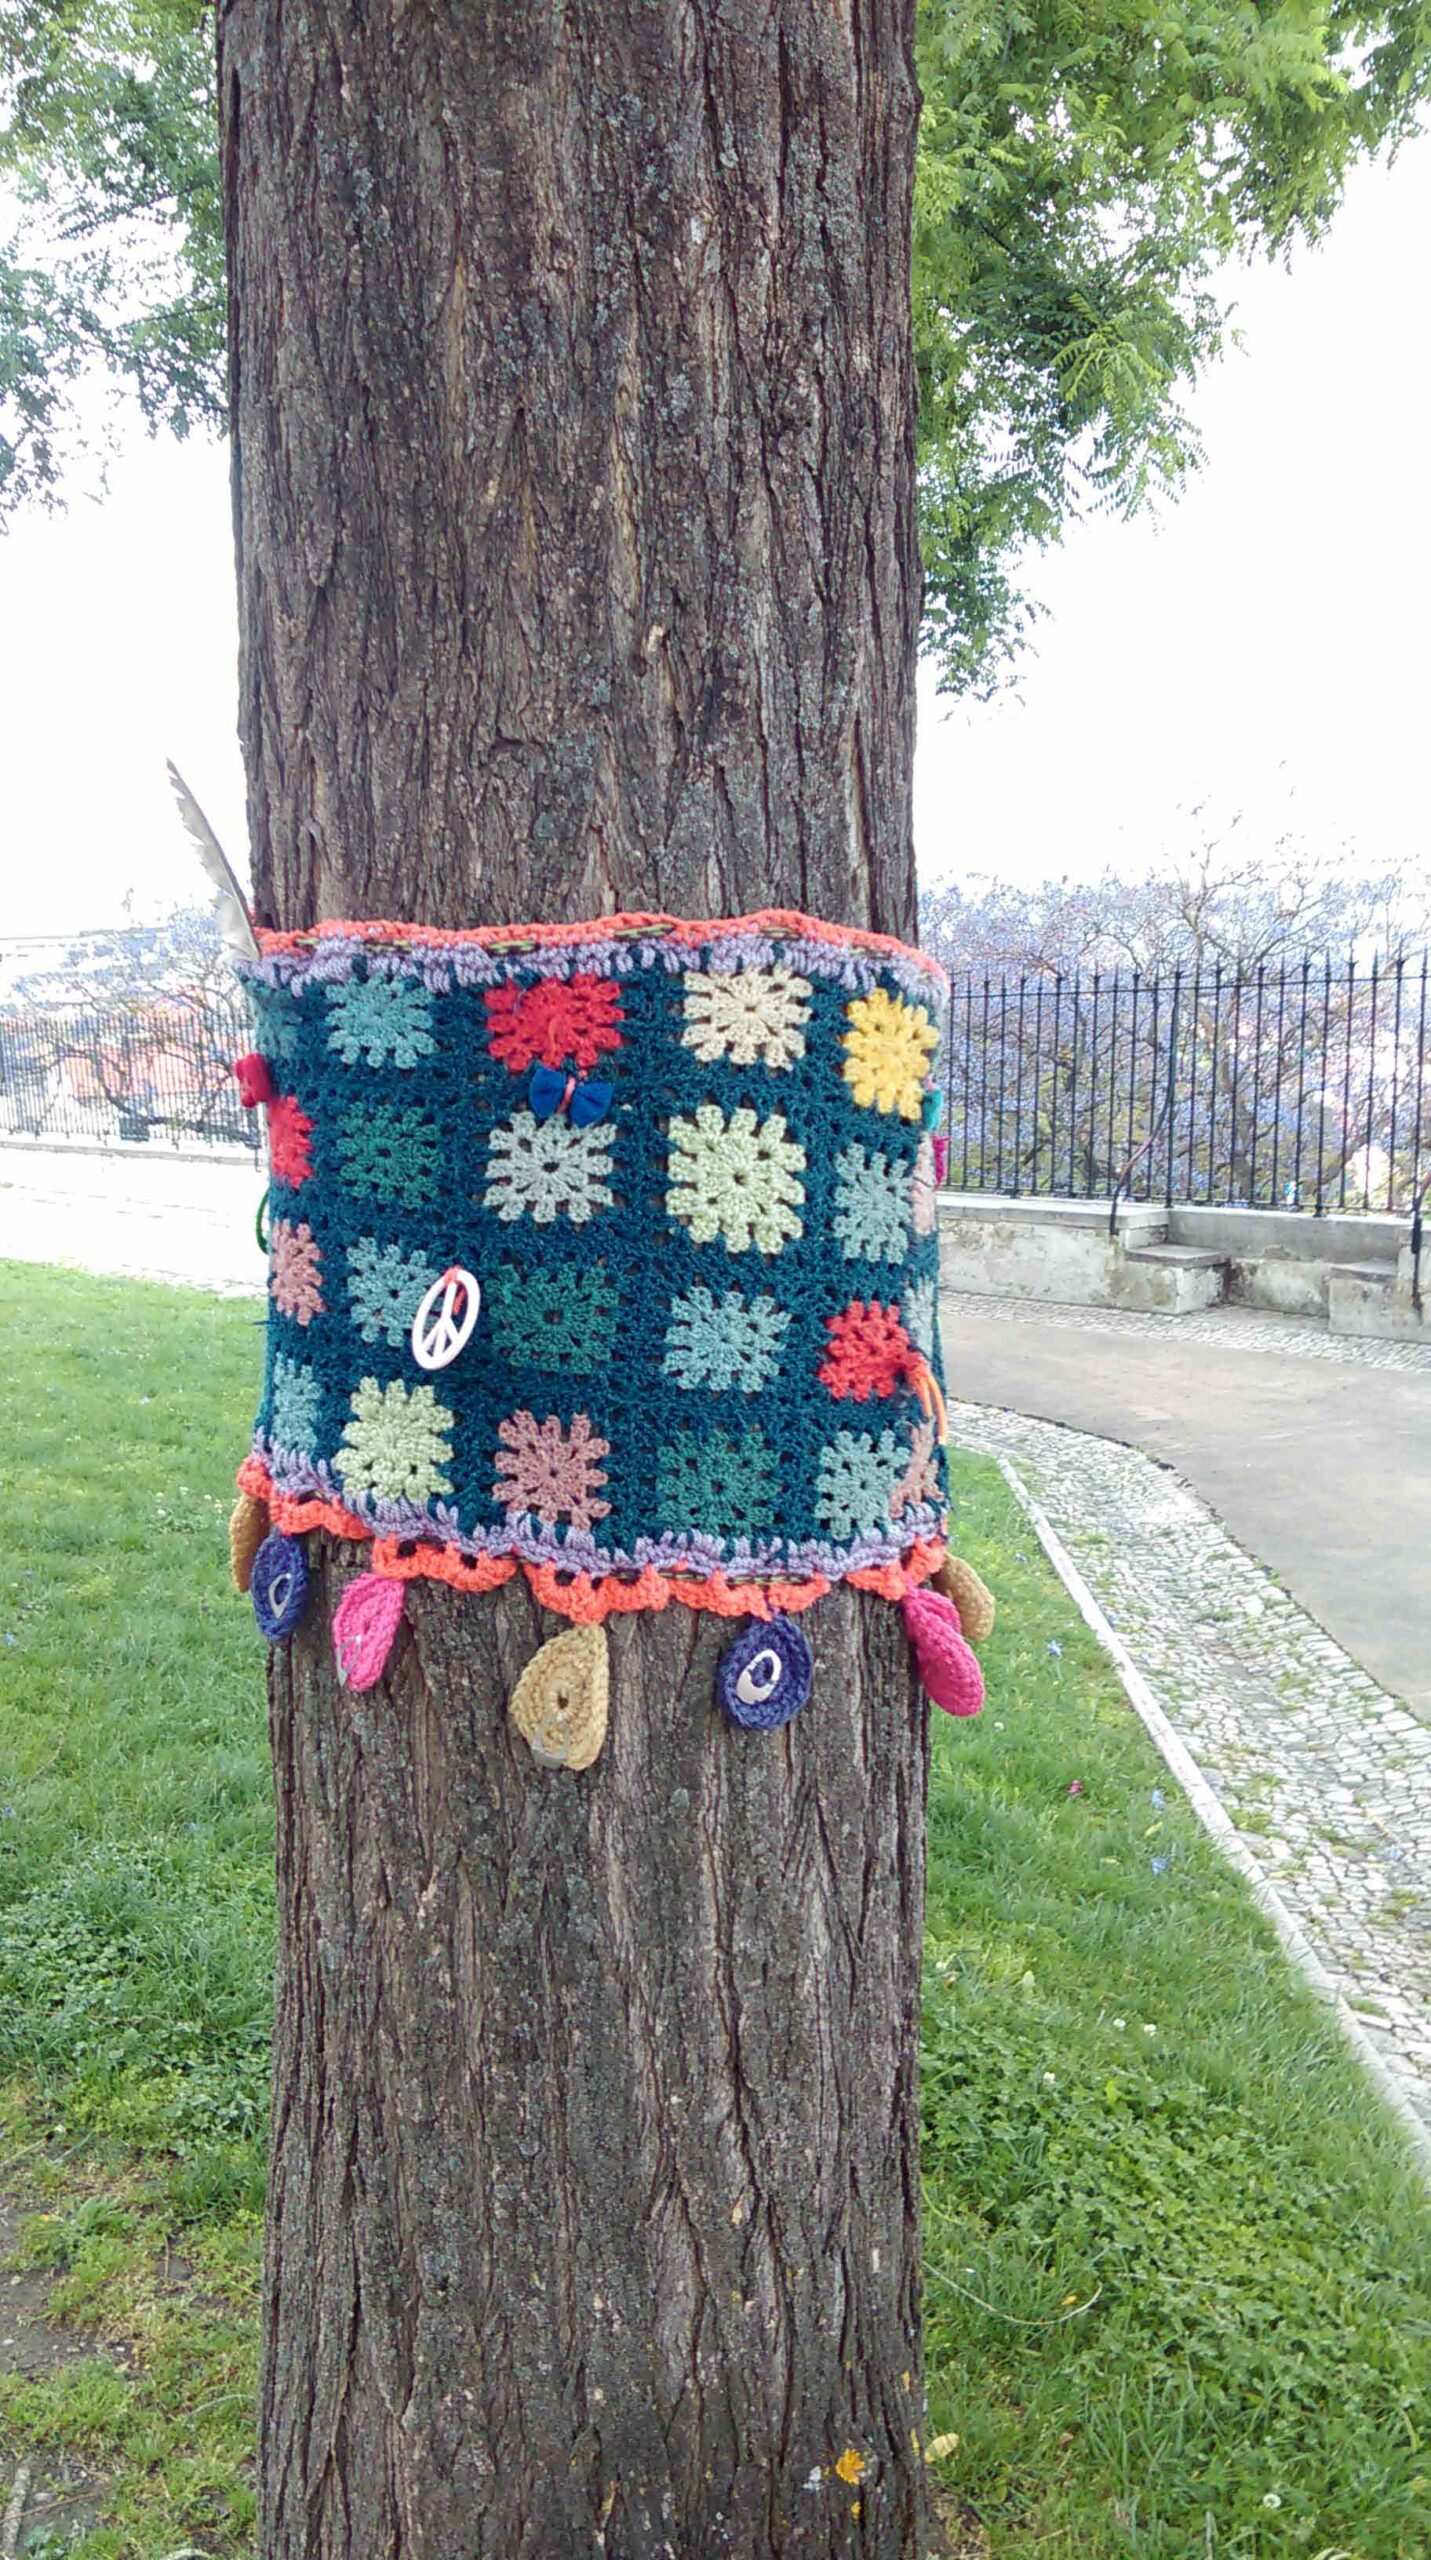 urban knitting culture urbaine arbre avec tricot graffiti et medaillon symbole paix Allemagne métropole Cologne espace vert streetart